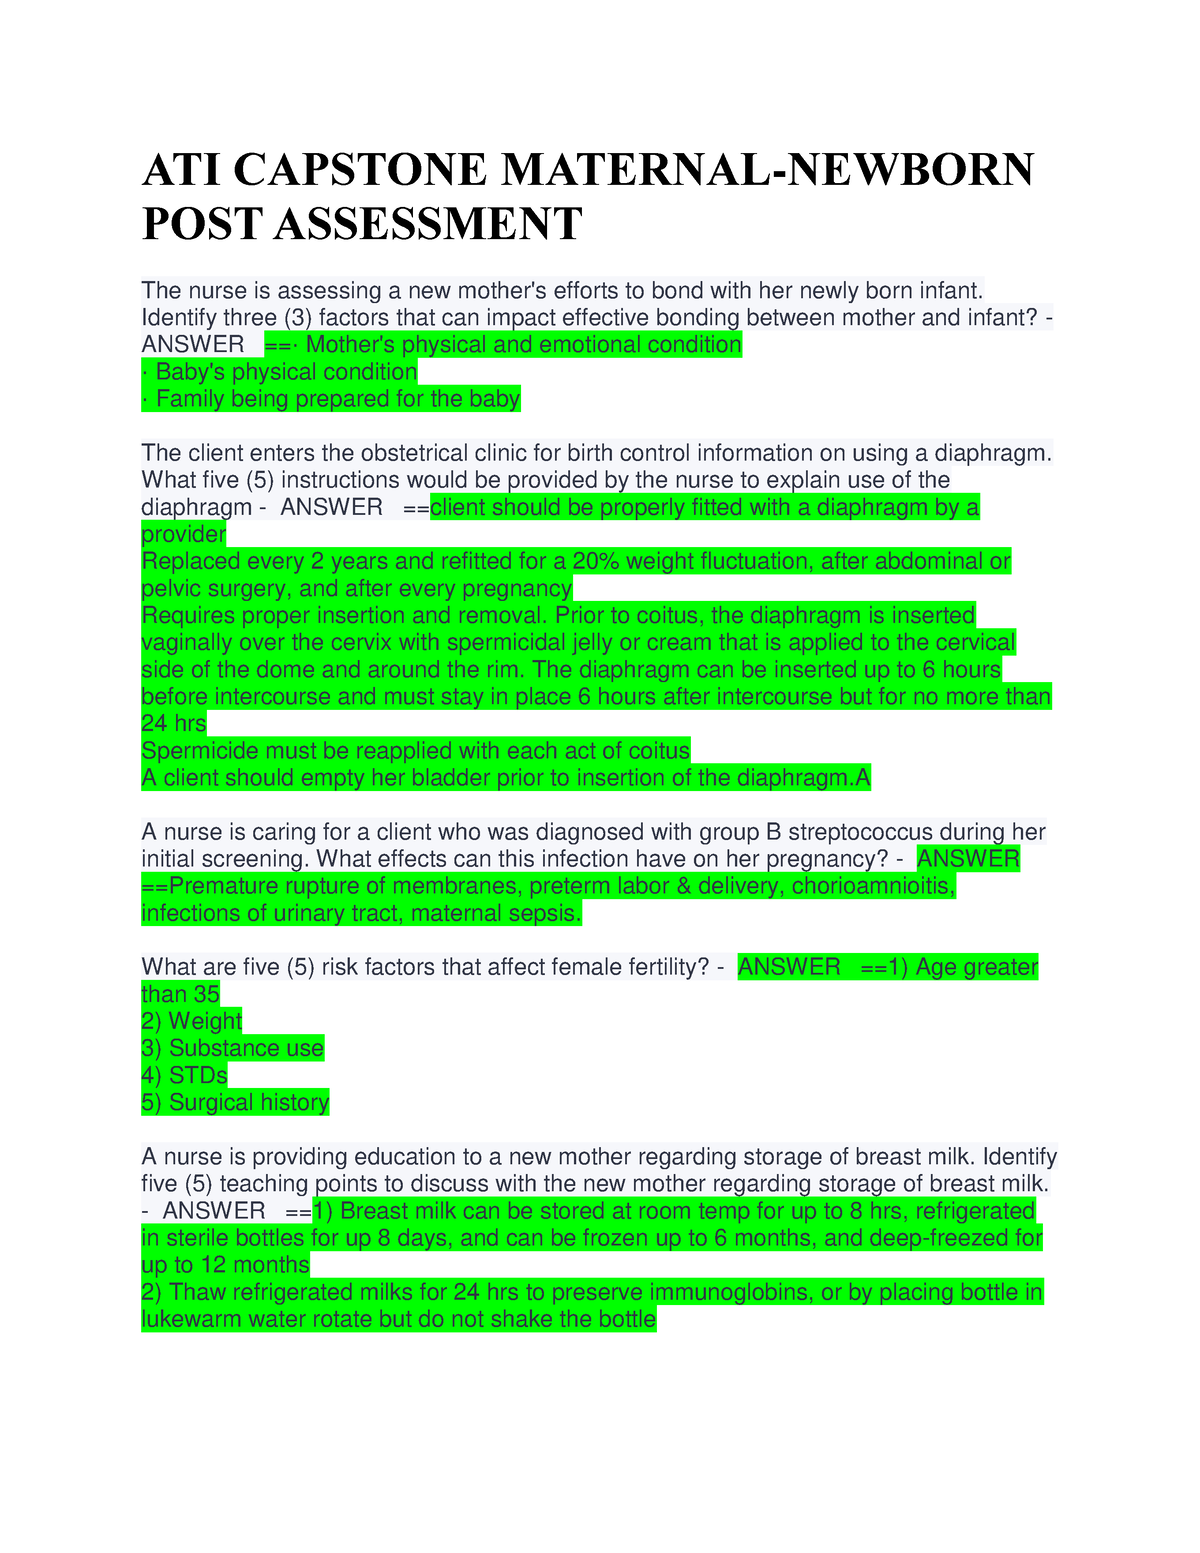 post assessment assignment ati capstone